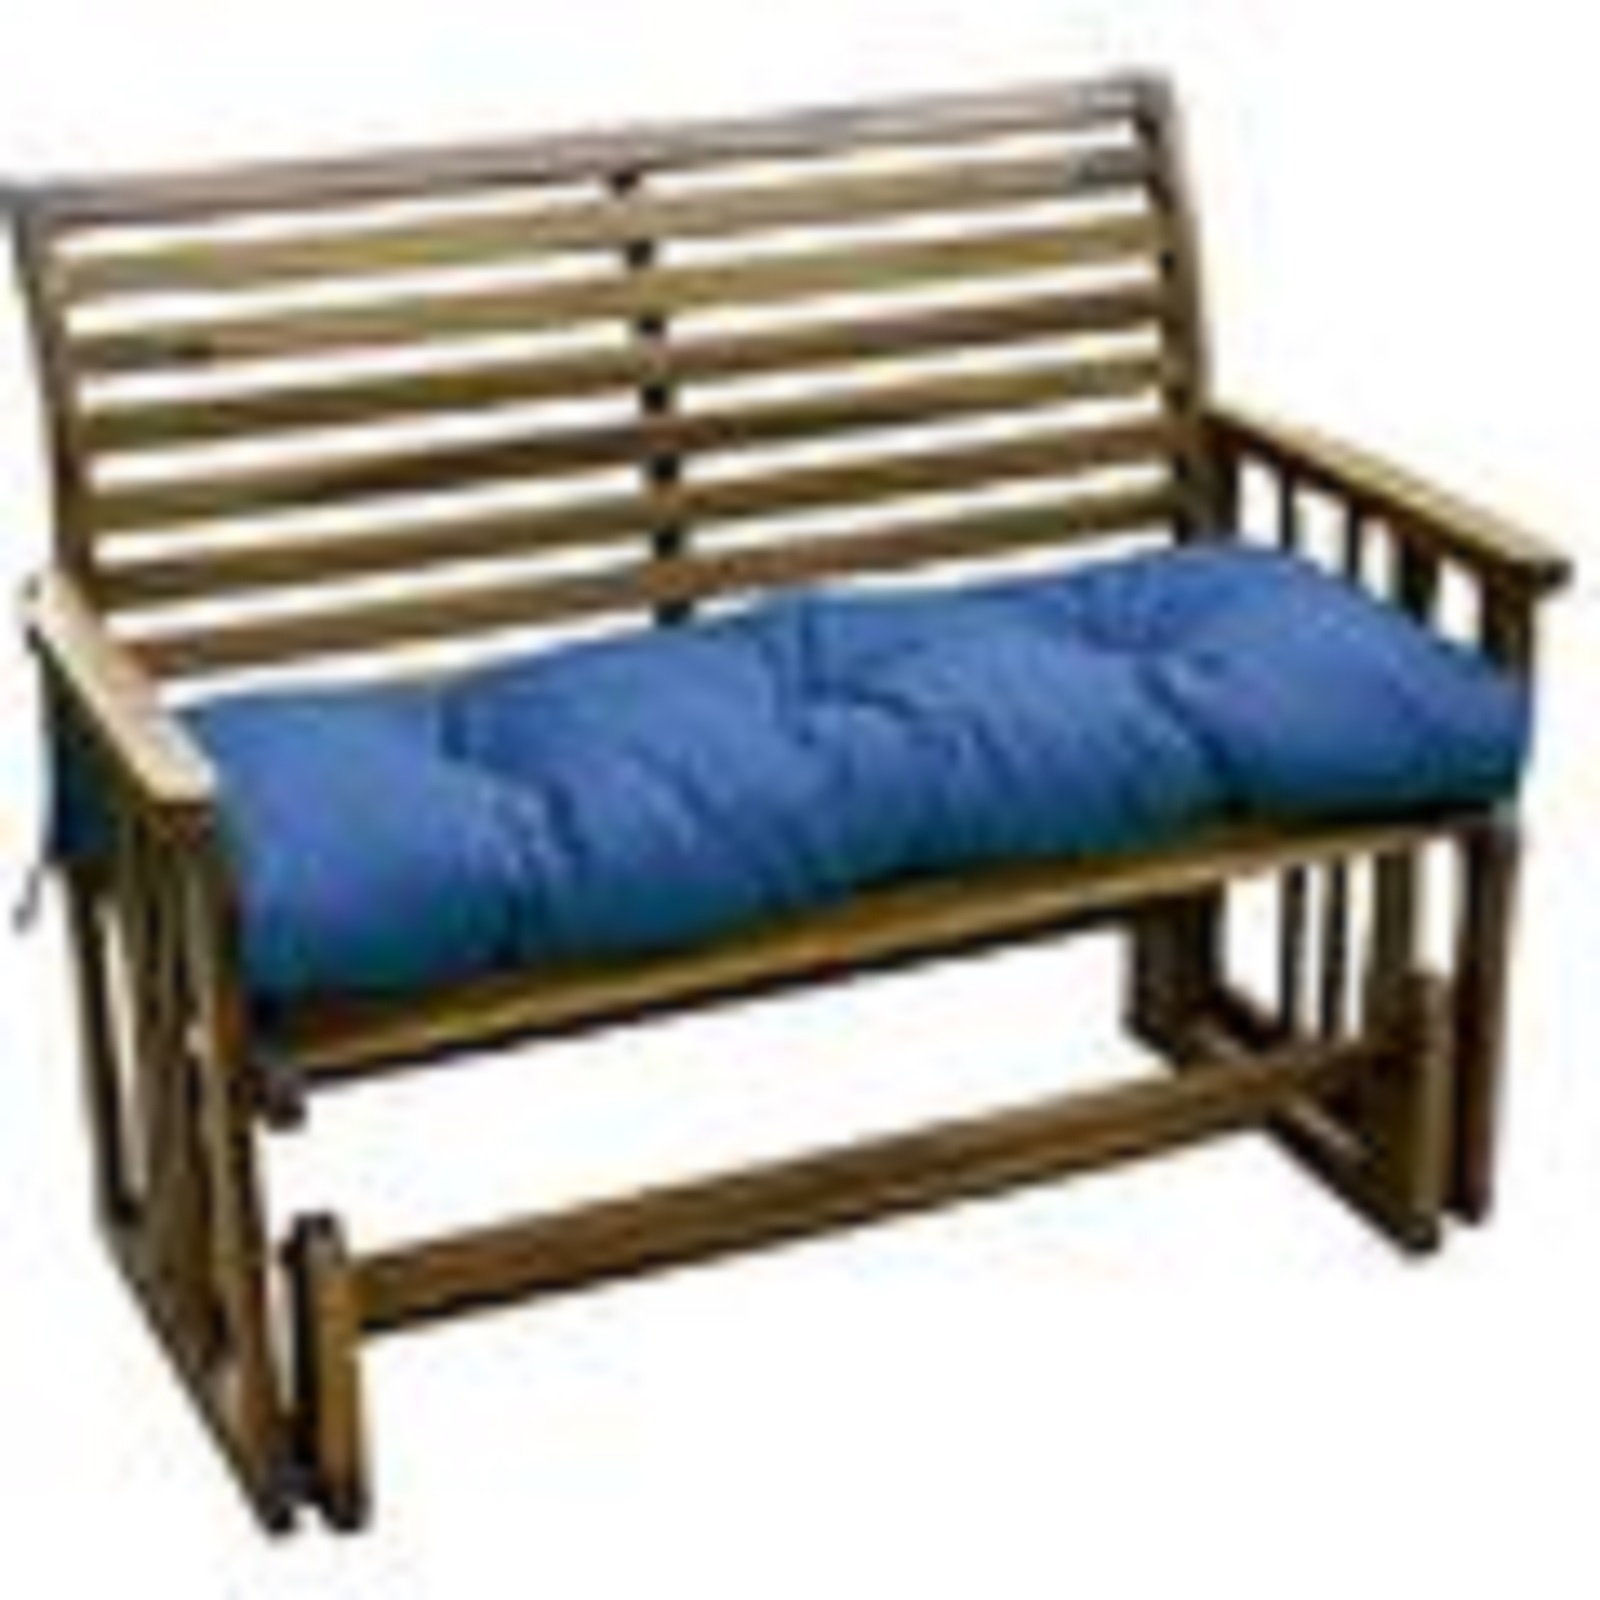 44 inch Outdoor Swing/Bench Cushion, Capri Blue